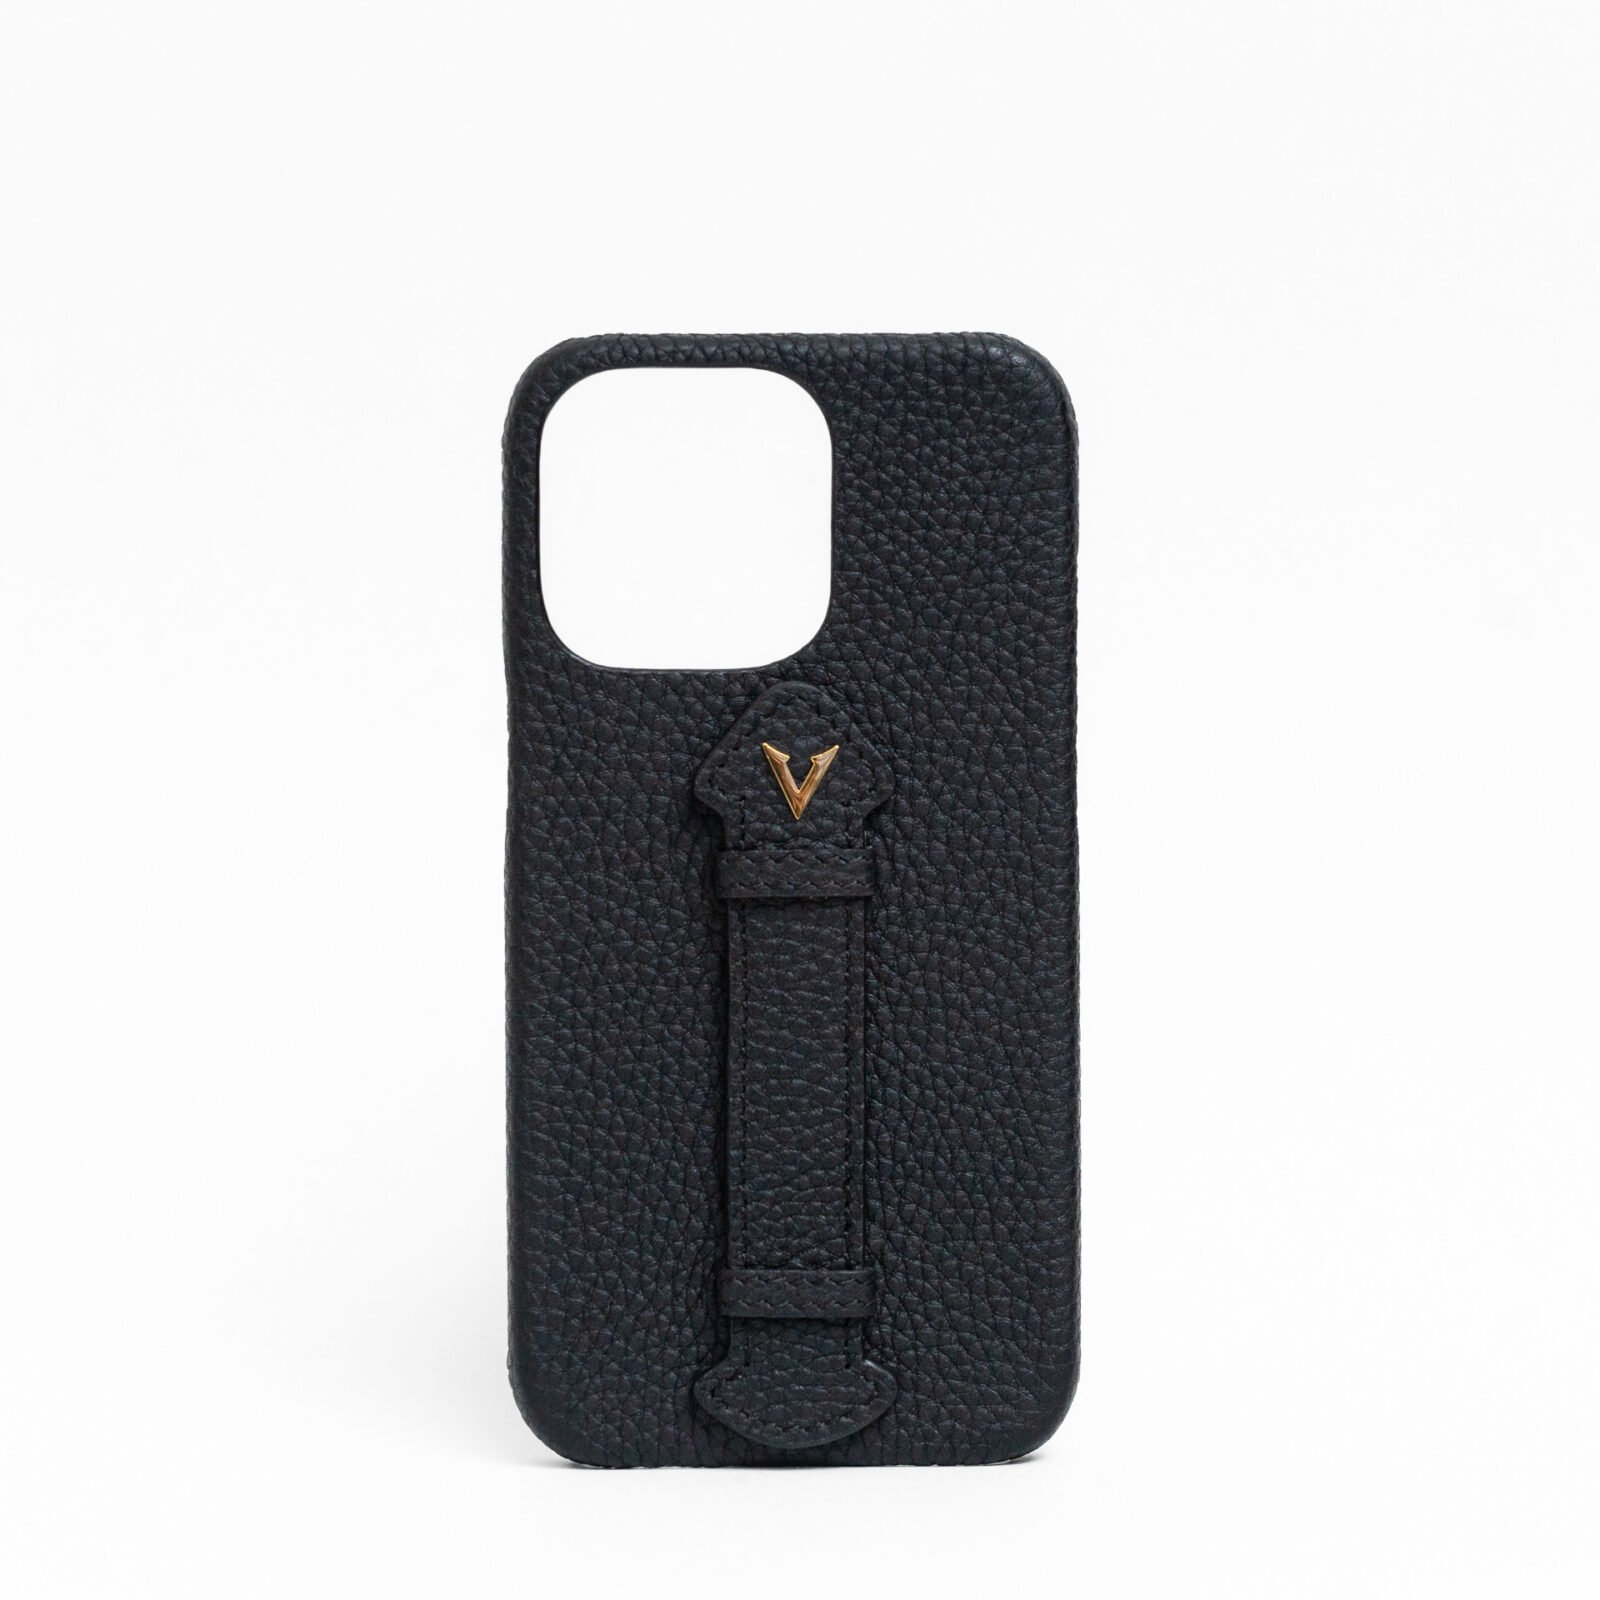 Vascari Black Calf Leather Finger Holder phone case